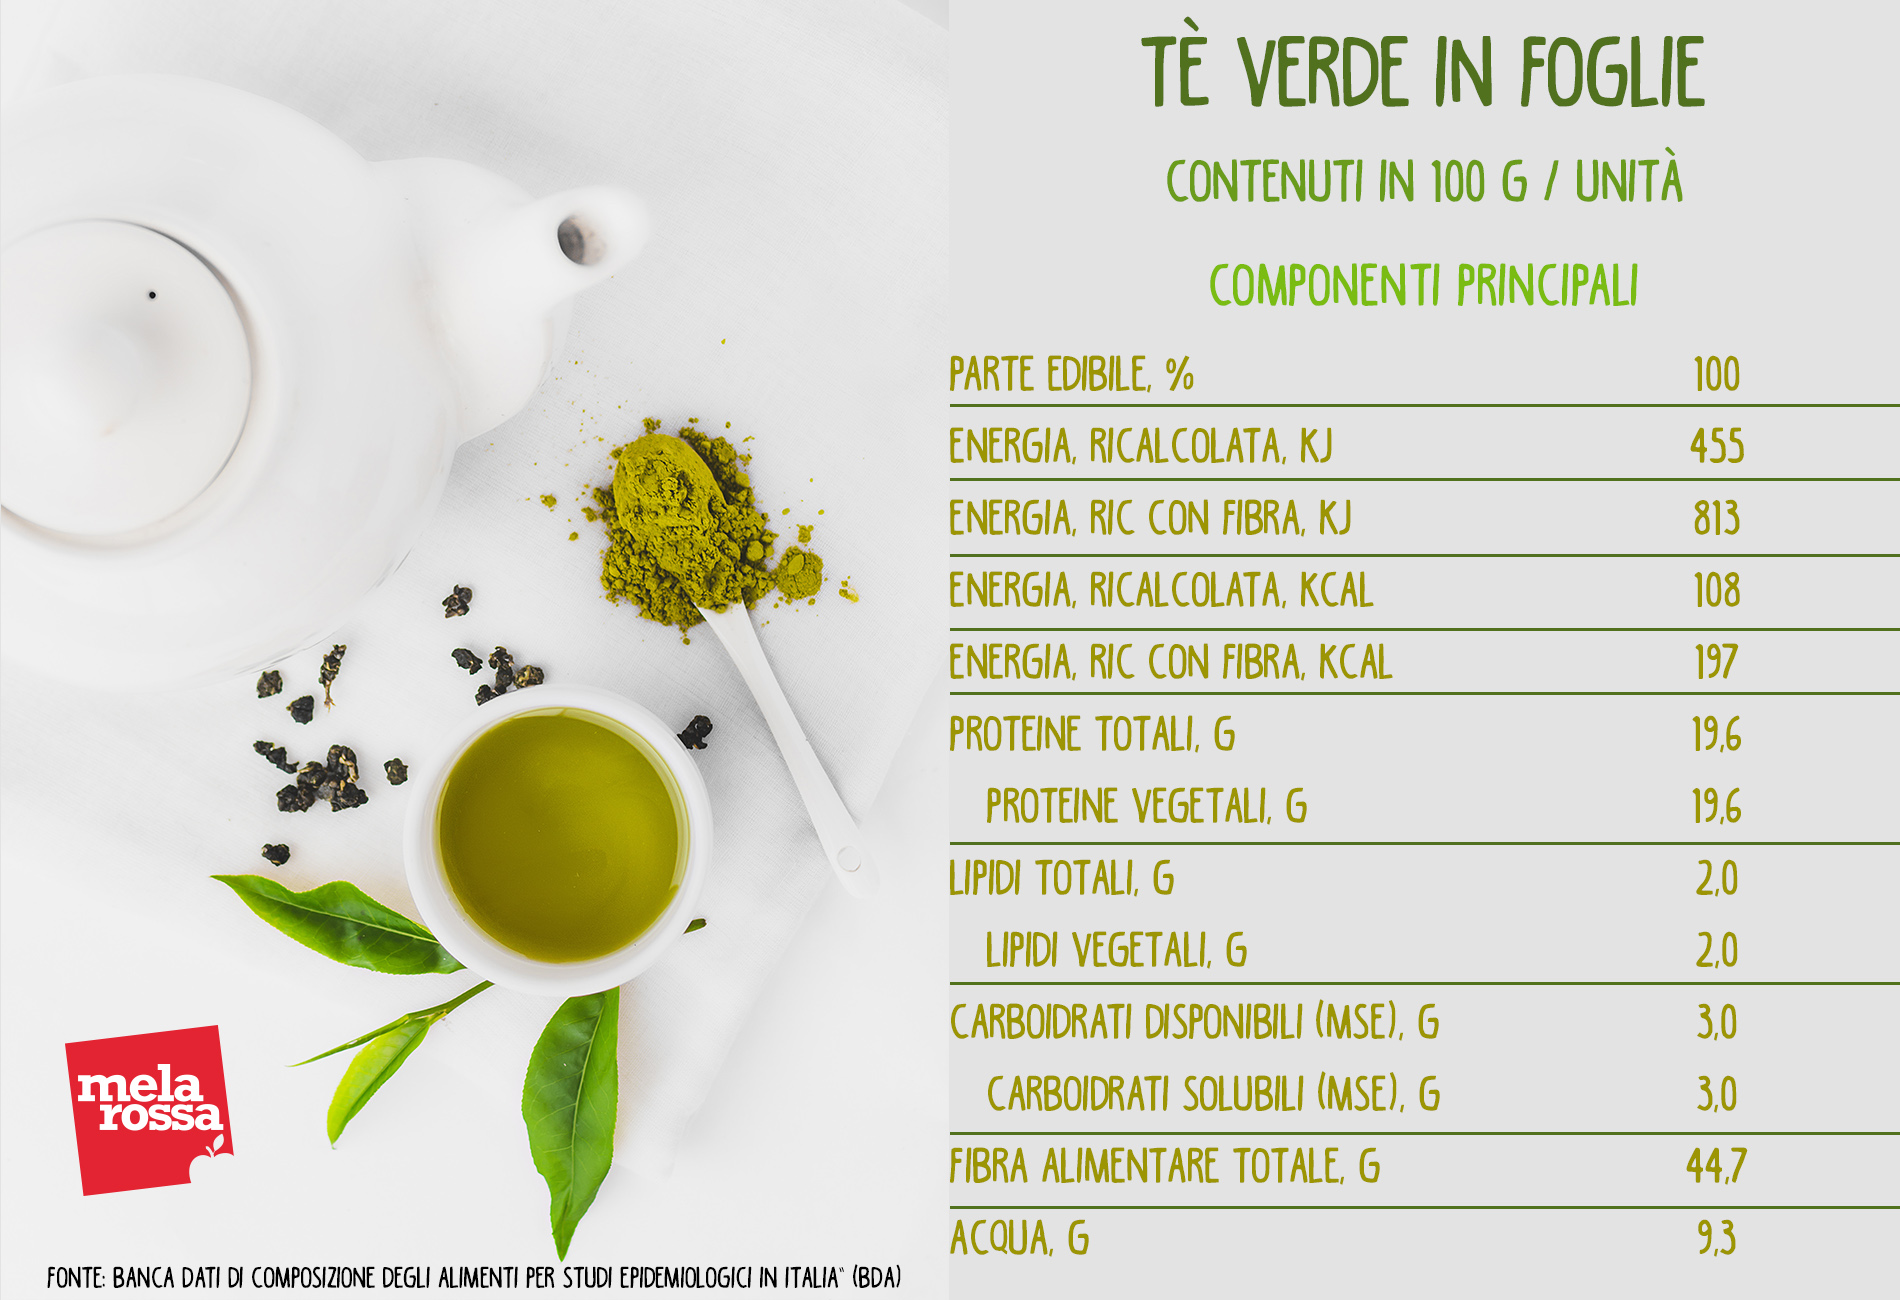 tè verde in foglie: valori nutrizionali 